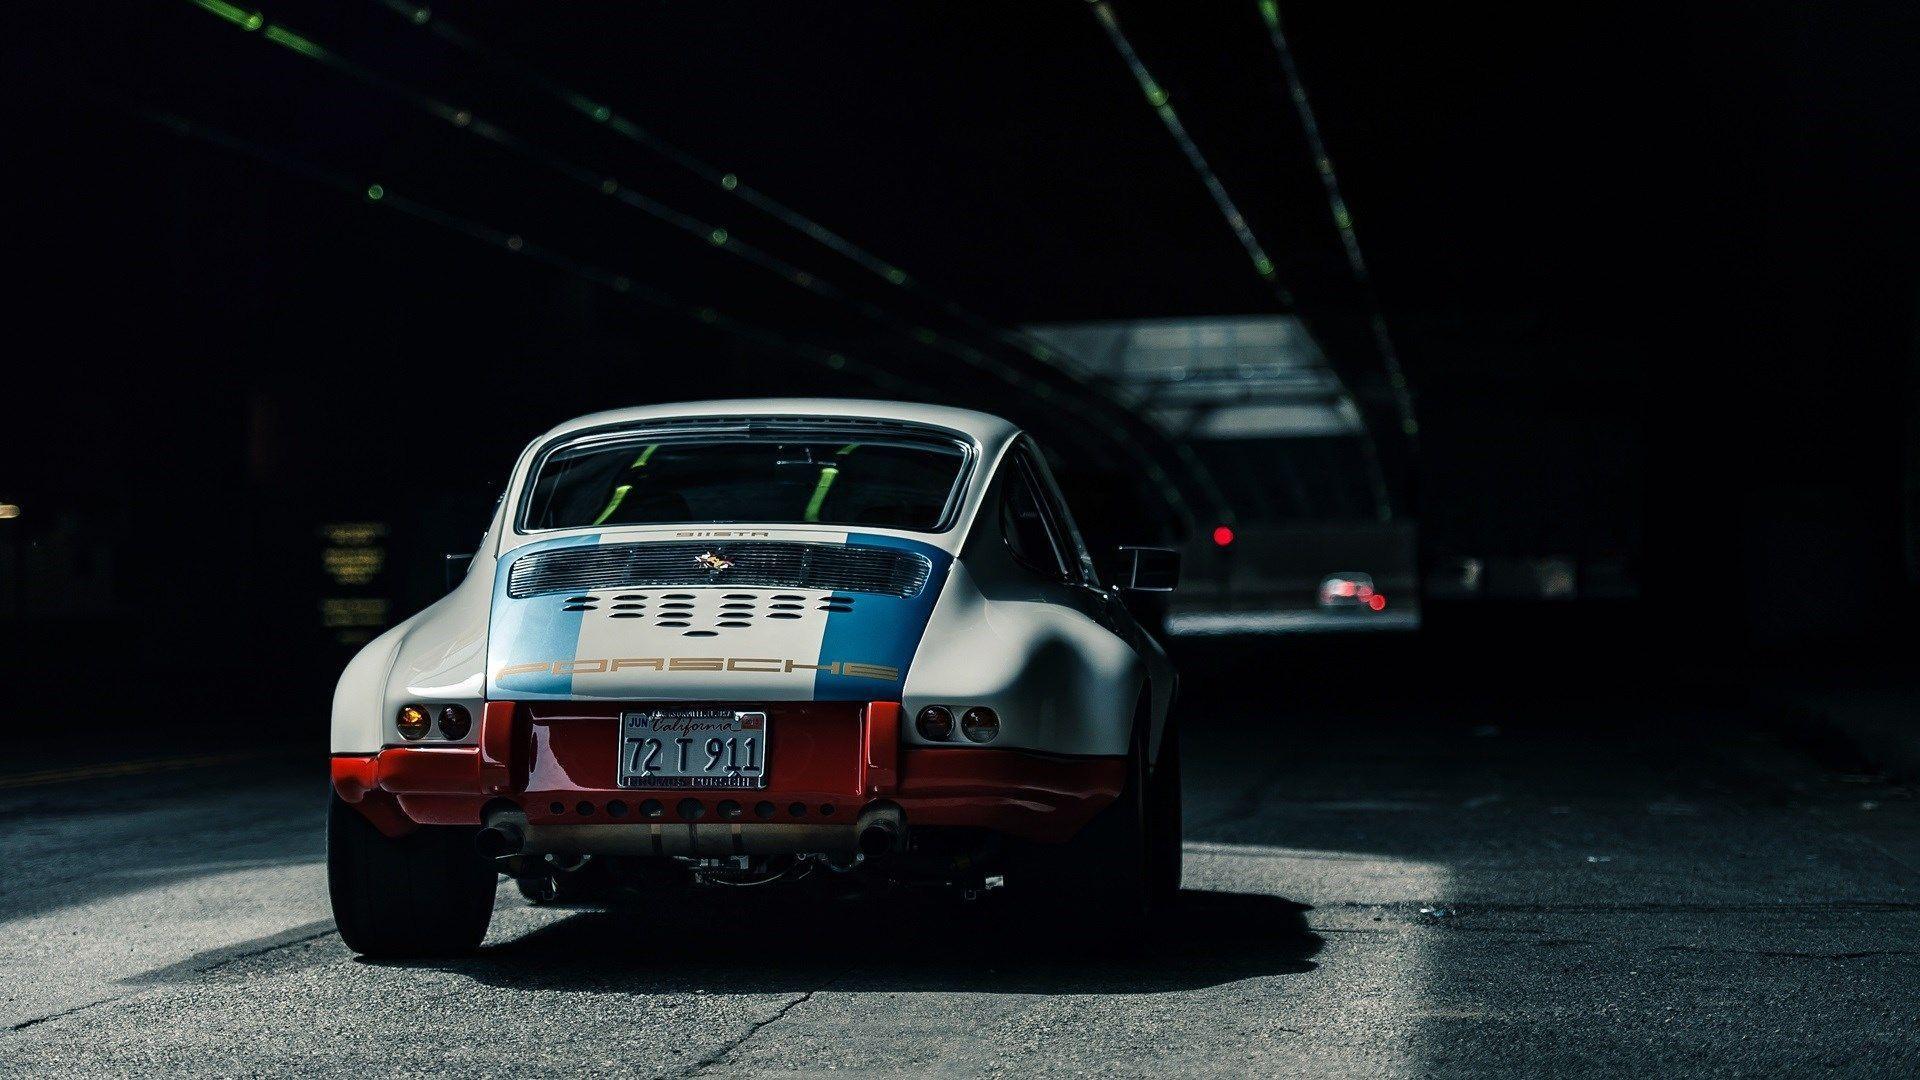 Retro Porsche Wallpapers Top Free Retro Porsche Backgrounds Wallpaperaccess